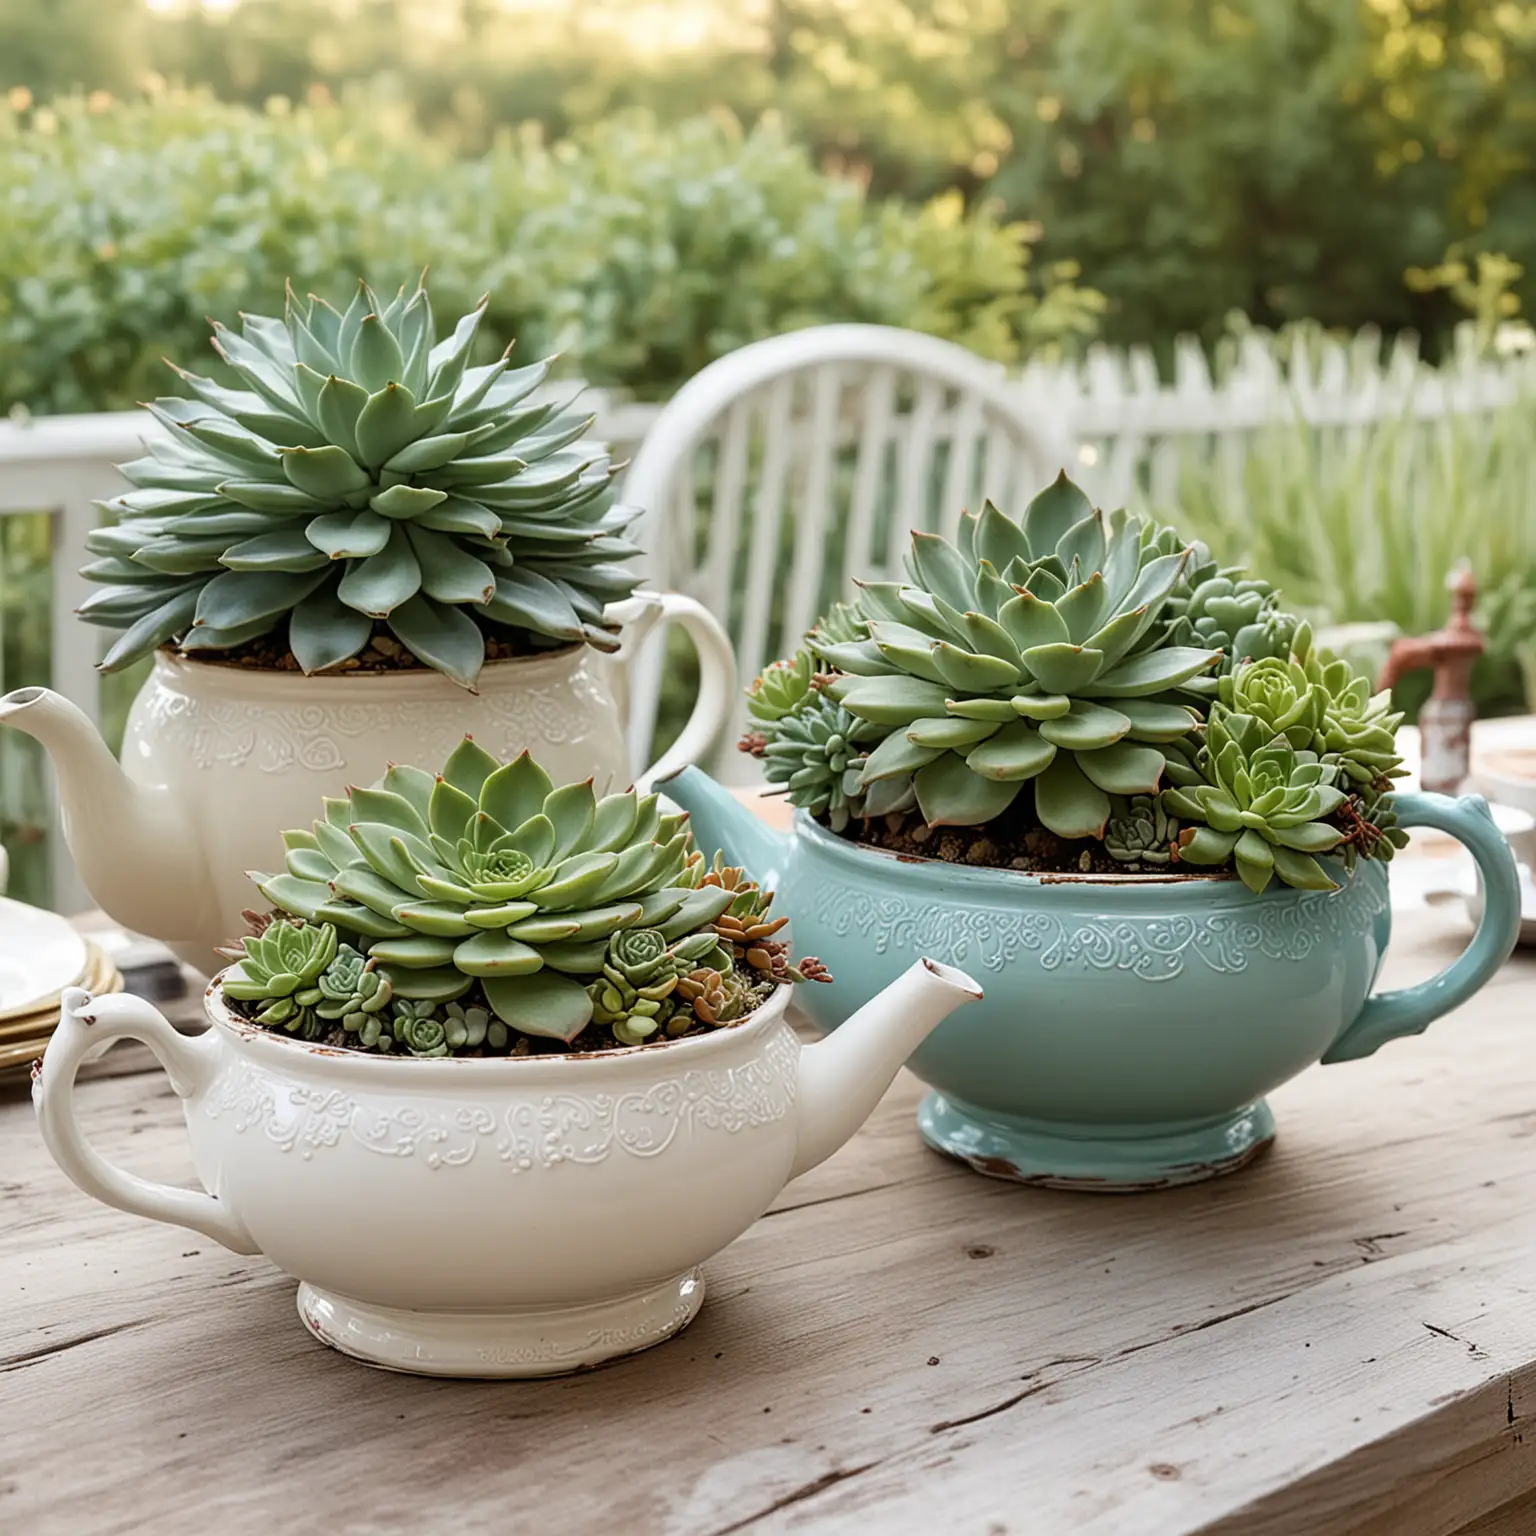 Vintage-Teapot-Succulent-Centerpiece-Rustic-Decor-for-Elegant-Settings